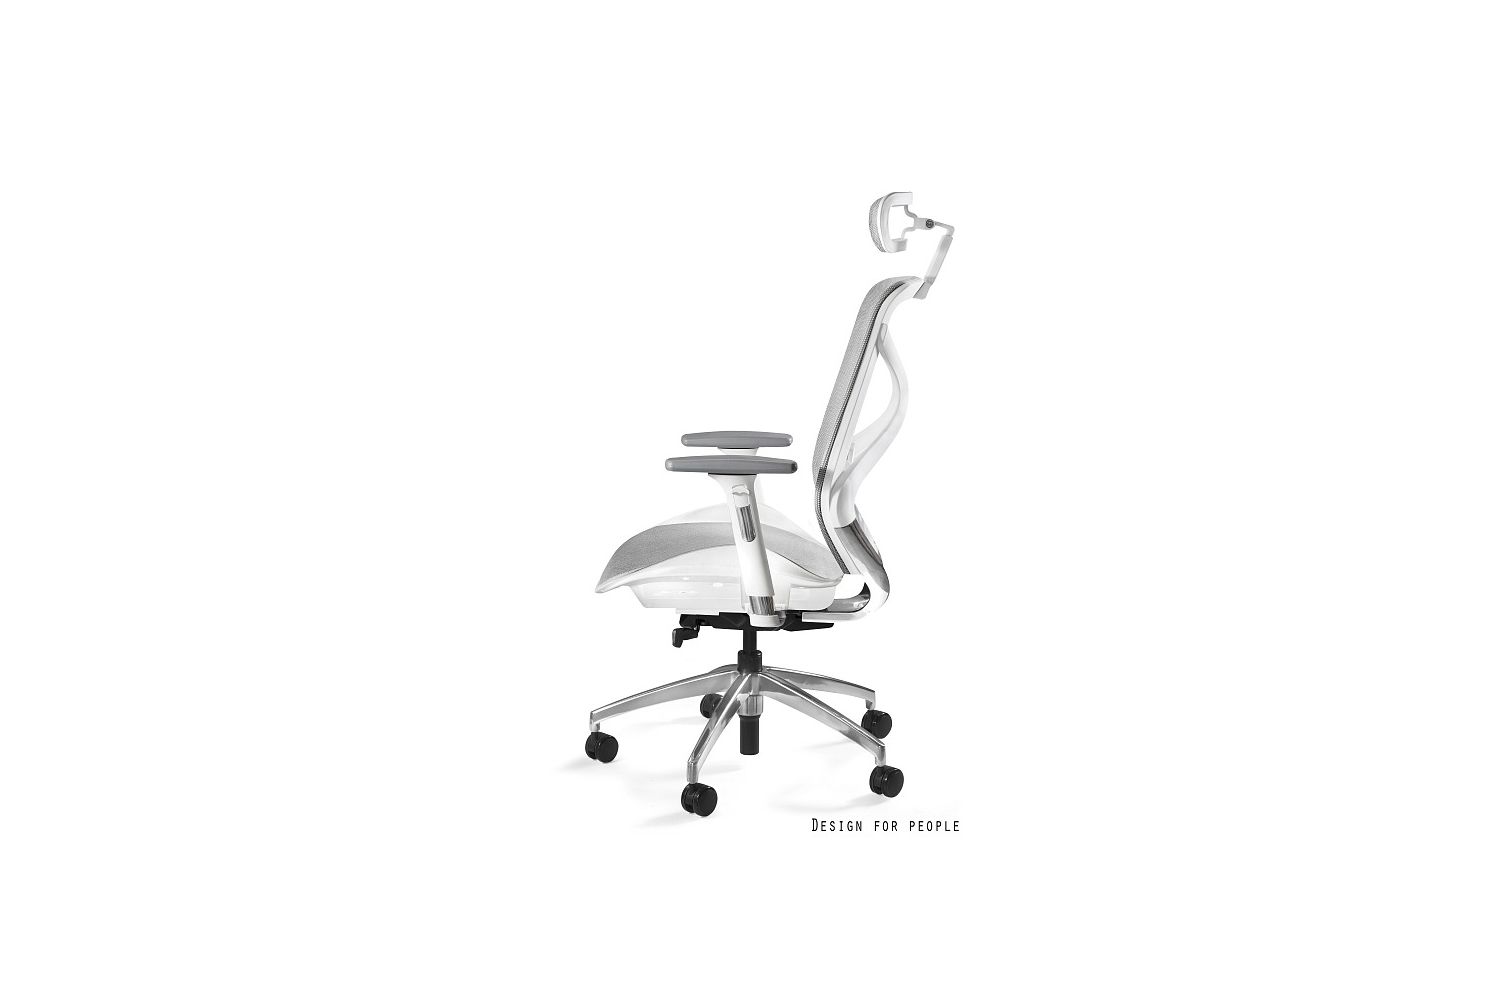 Kancelářská židle Harry síťovina / bílá